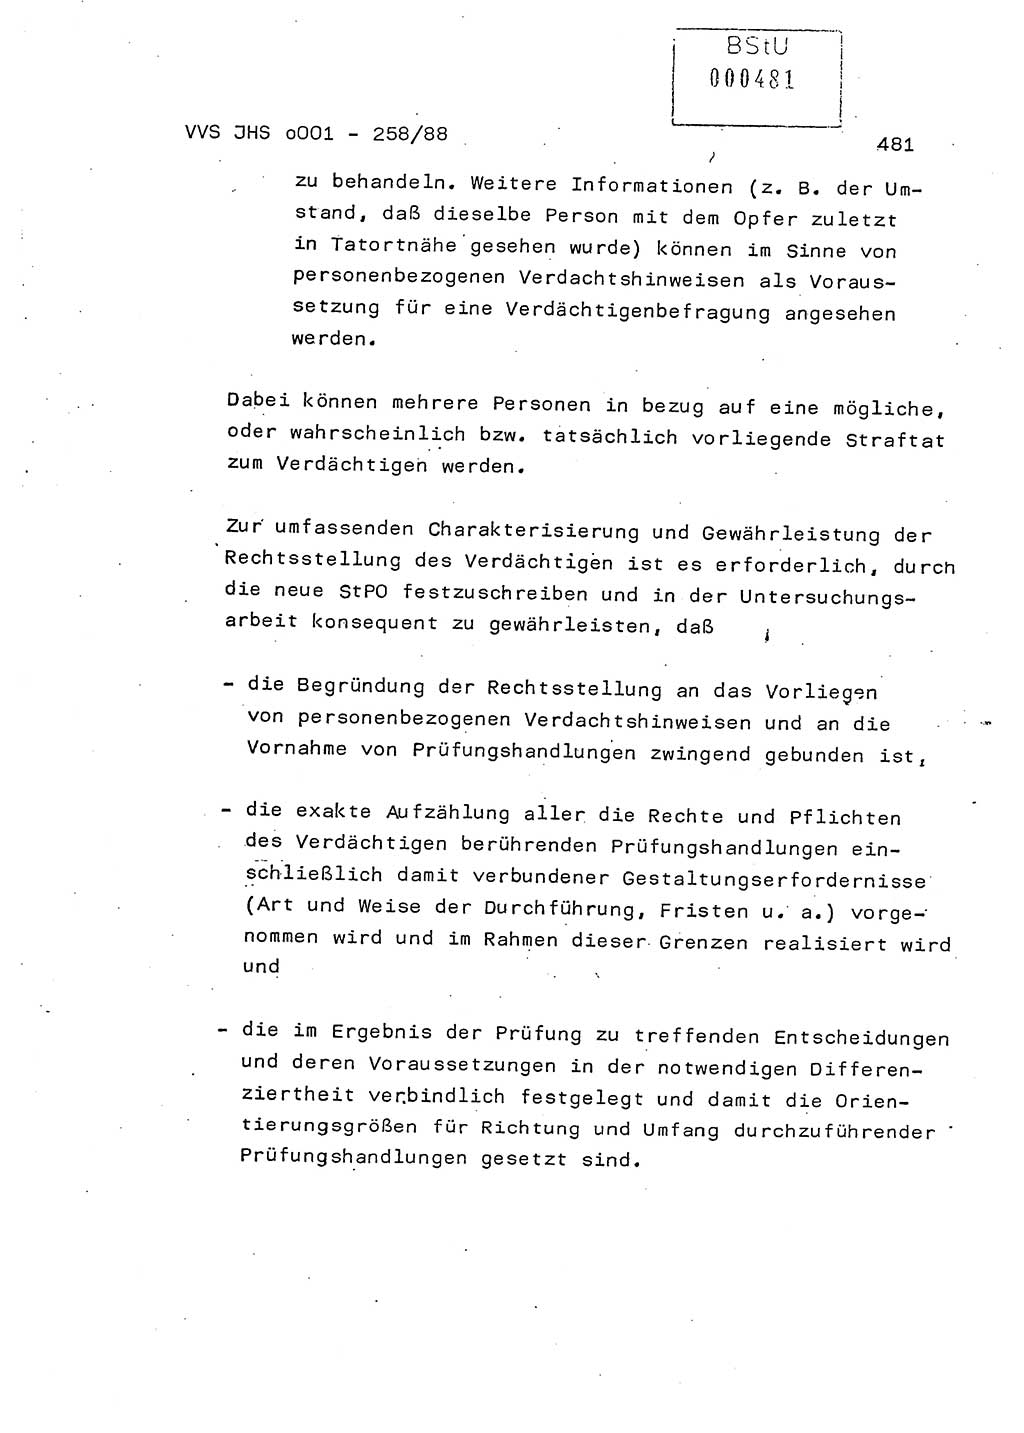 Dissertation, Oberleutnant Uwe Kärsten (JHS), Hauptmann Dr. Joachim Henkel (JHS), Oberstleutnant Werner Mählitz (Leiter der Abt. Ⅸ BV Rostock), Oberstleutnant Jürgen Tröge (HA Ⅸ/AKG), Oberstleutnant Winfried Ziegler (HA Ⅸ/9), Major Wolf-Rüdiger Wurzler (JHS), Ministerium für Staatssicherheit (MfS) [Deutsche Demokratische Republik (DDR)], Juristische Hochschule (JHS), Vertrauliche Verschlußsache (VVS) o001-258/88, Potsdam 1988, Seite 481 (Diss. MfS DDR JHS VVS o001-258/88 1988, S. 481)